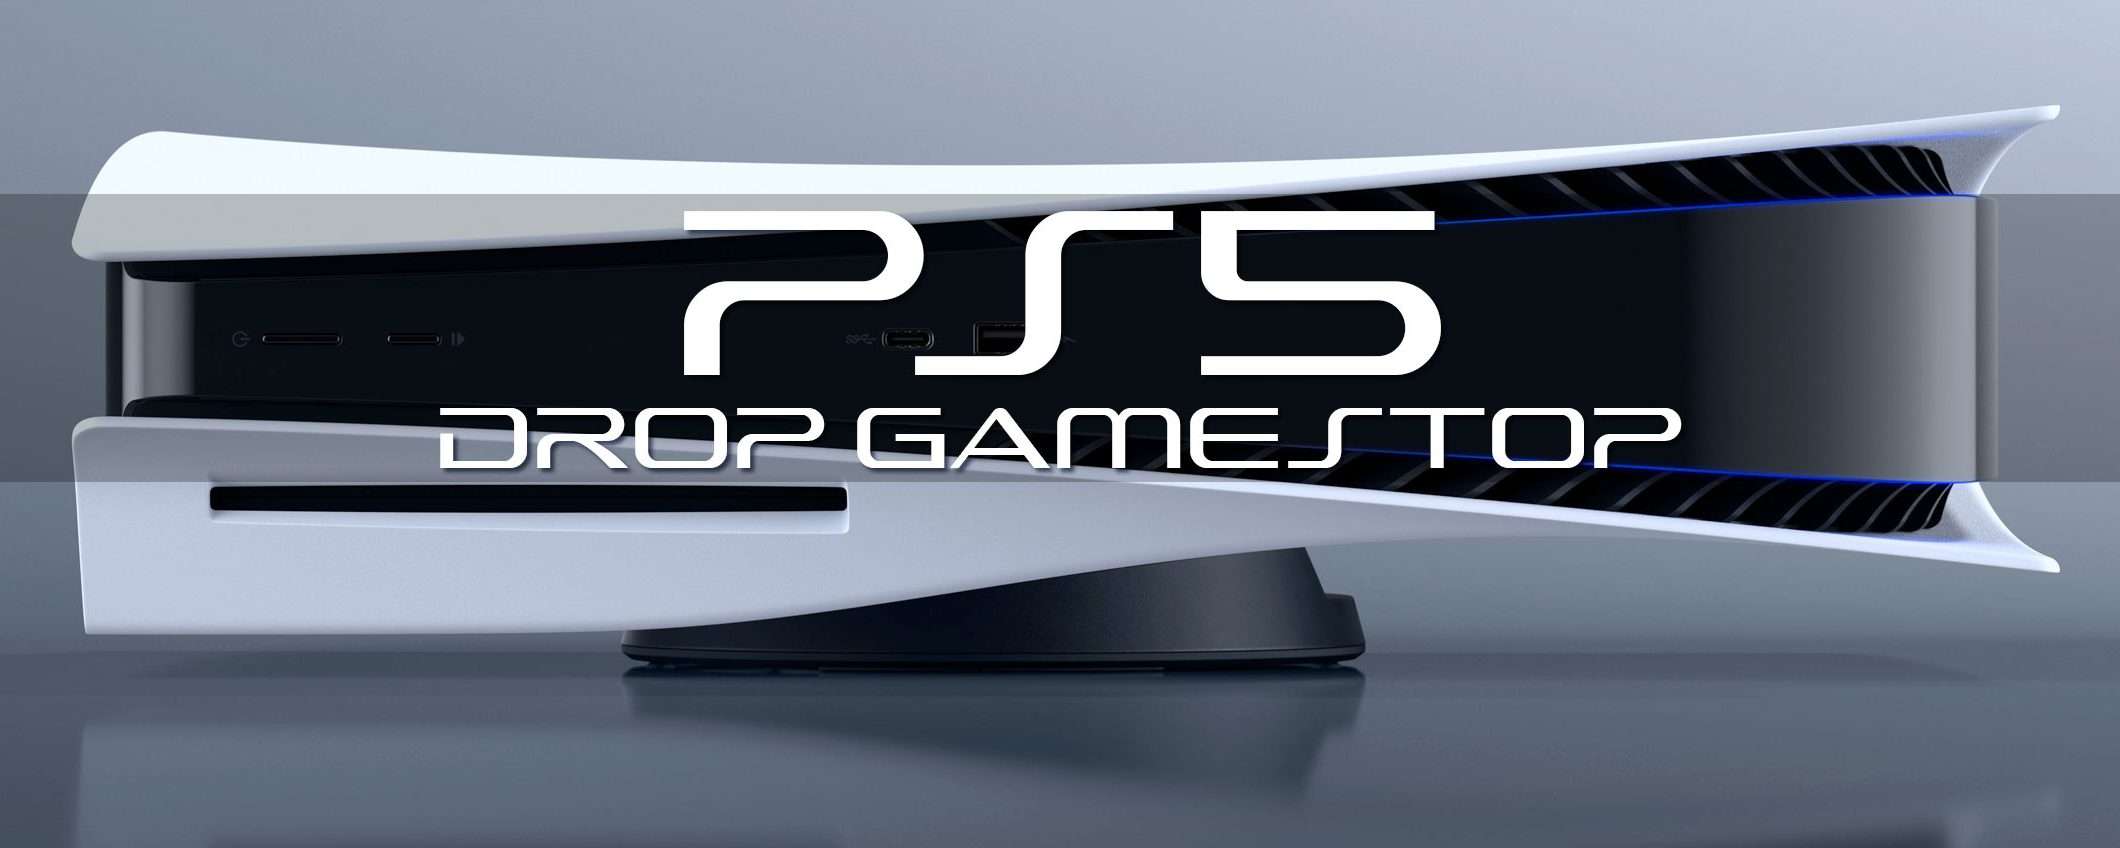 PS5, Drop GameStop (22 dicembre): ultima chiamata